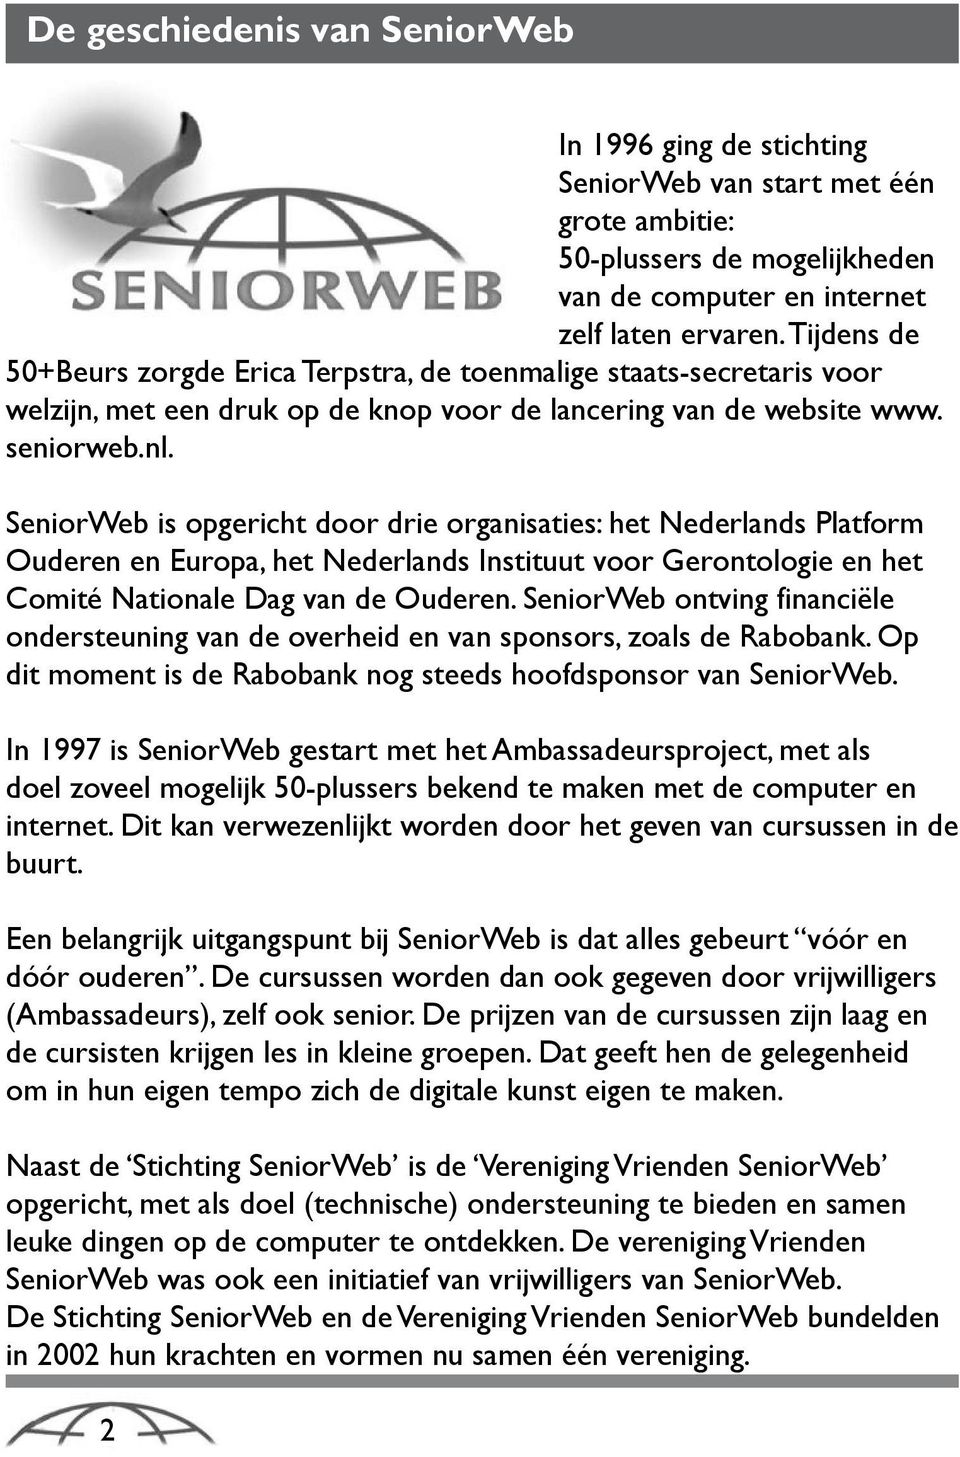 SeniorWeb is opgericht door drie organisaties: het Nederlands Platform Ouderen en Europa, het Nederlands Instituut voor Gerontologie en het Comité Nationale Dag van de Ouderen.